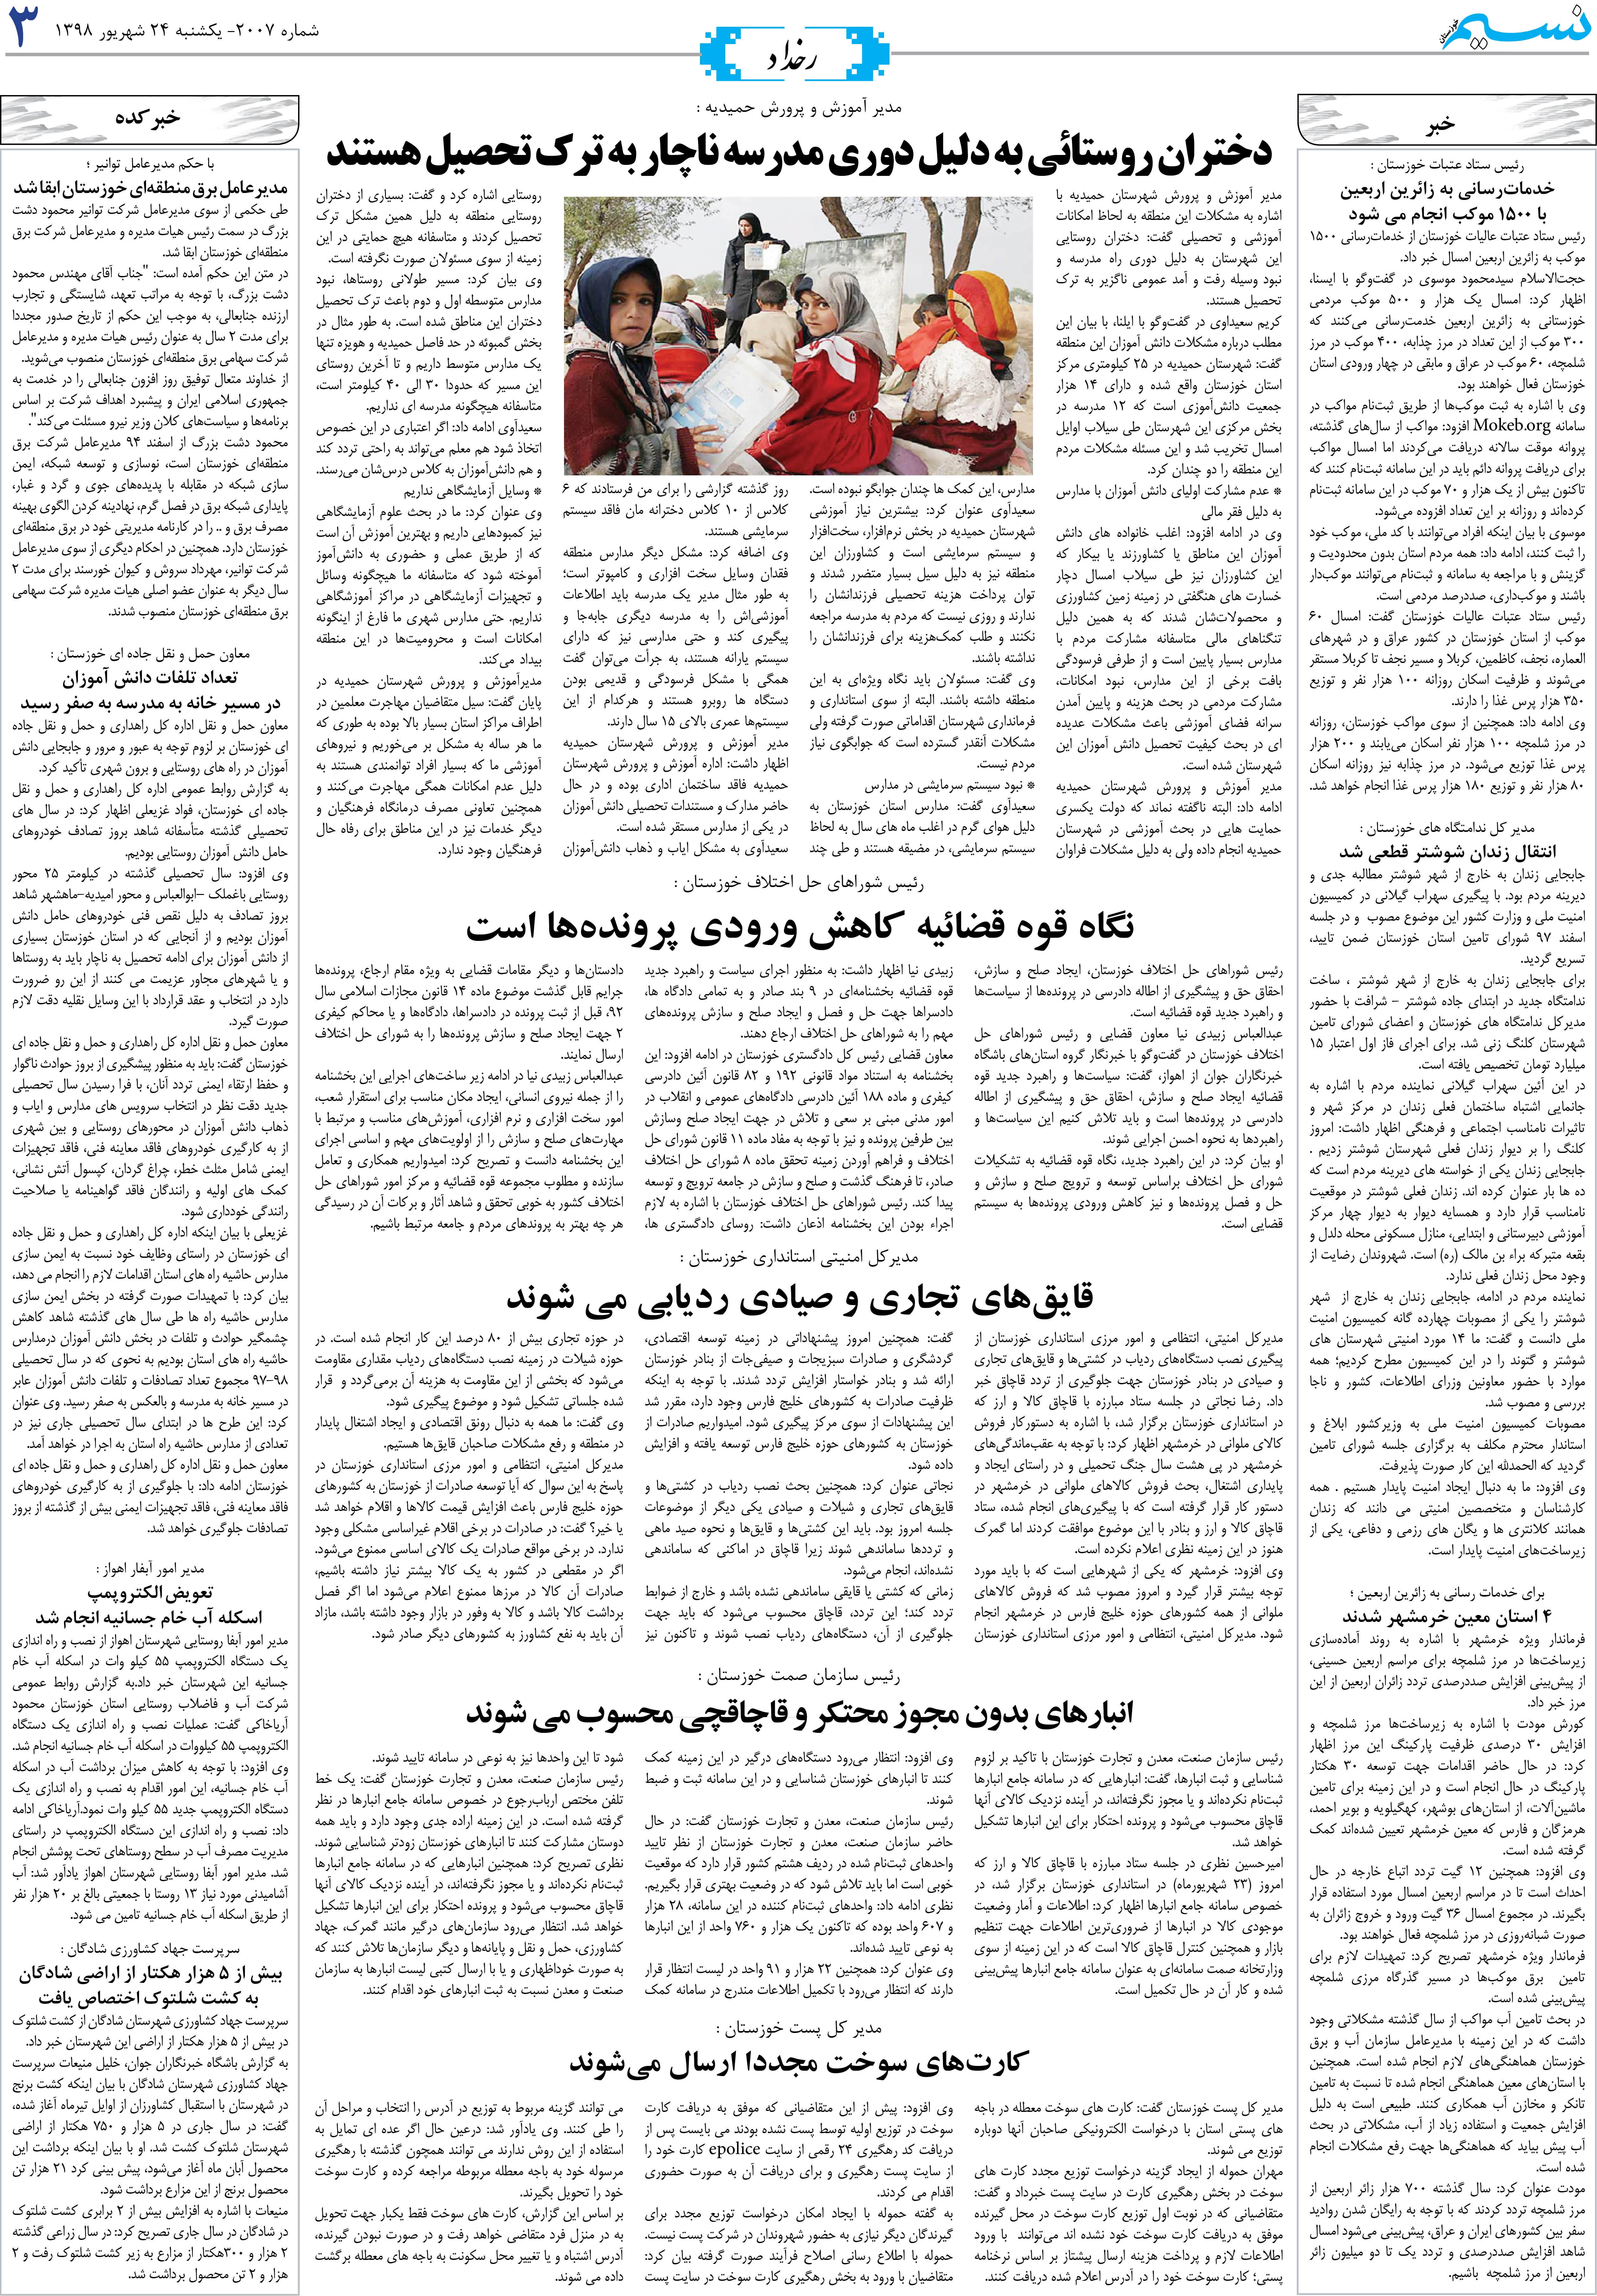 صفحه رخداد روزنامه نسیم شماره 2007